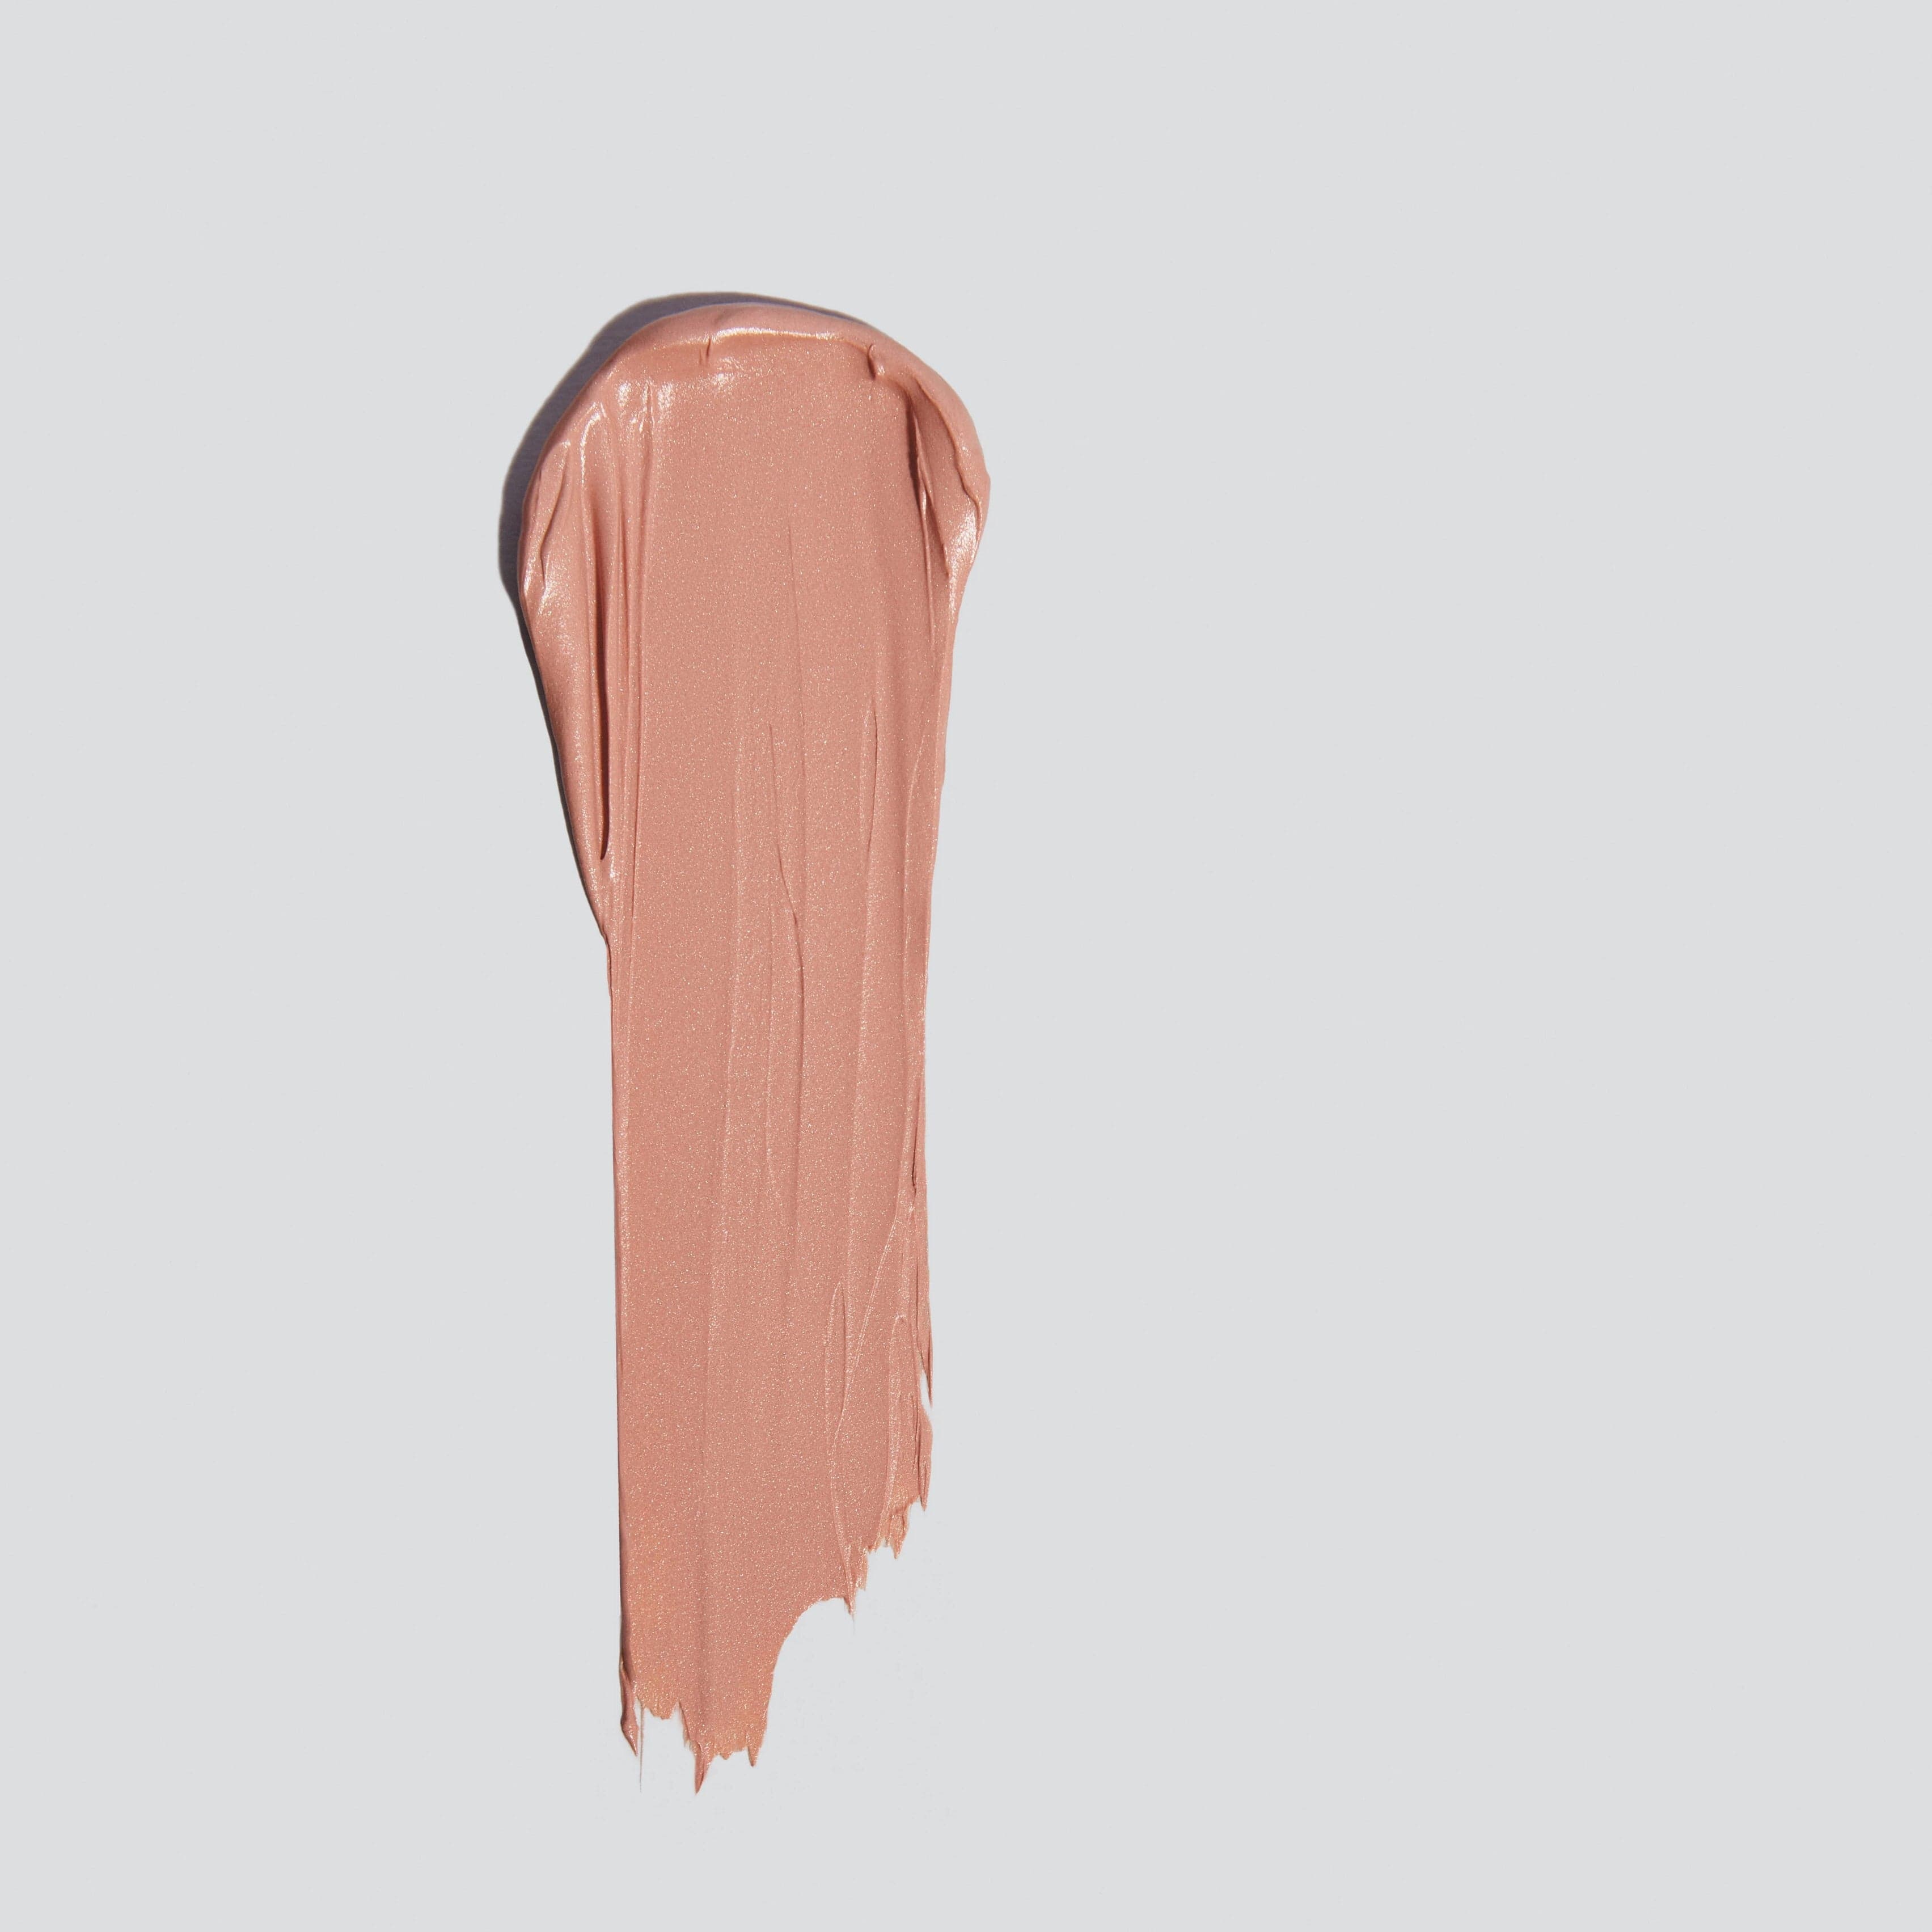 Ein Klecks flüssiges Make-up in Nude-Ton auf weißem Hintergrund.